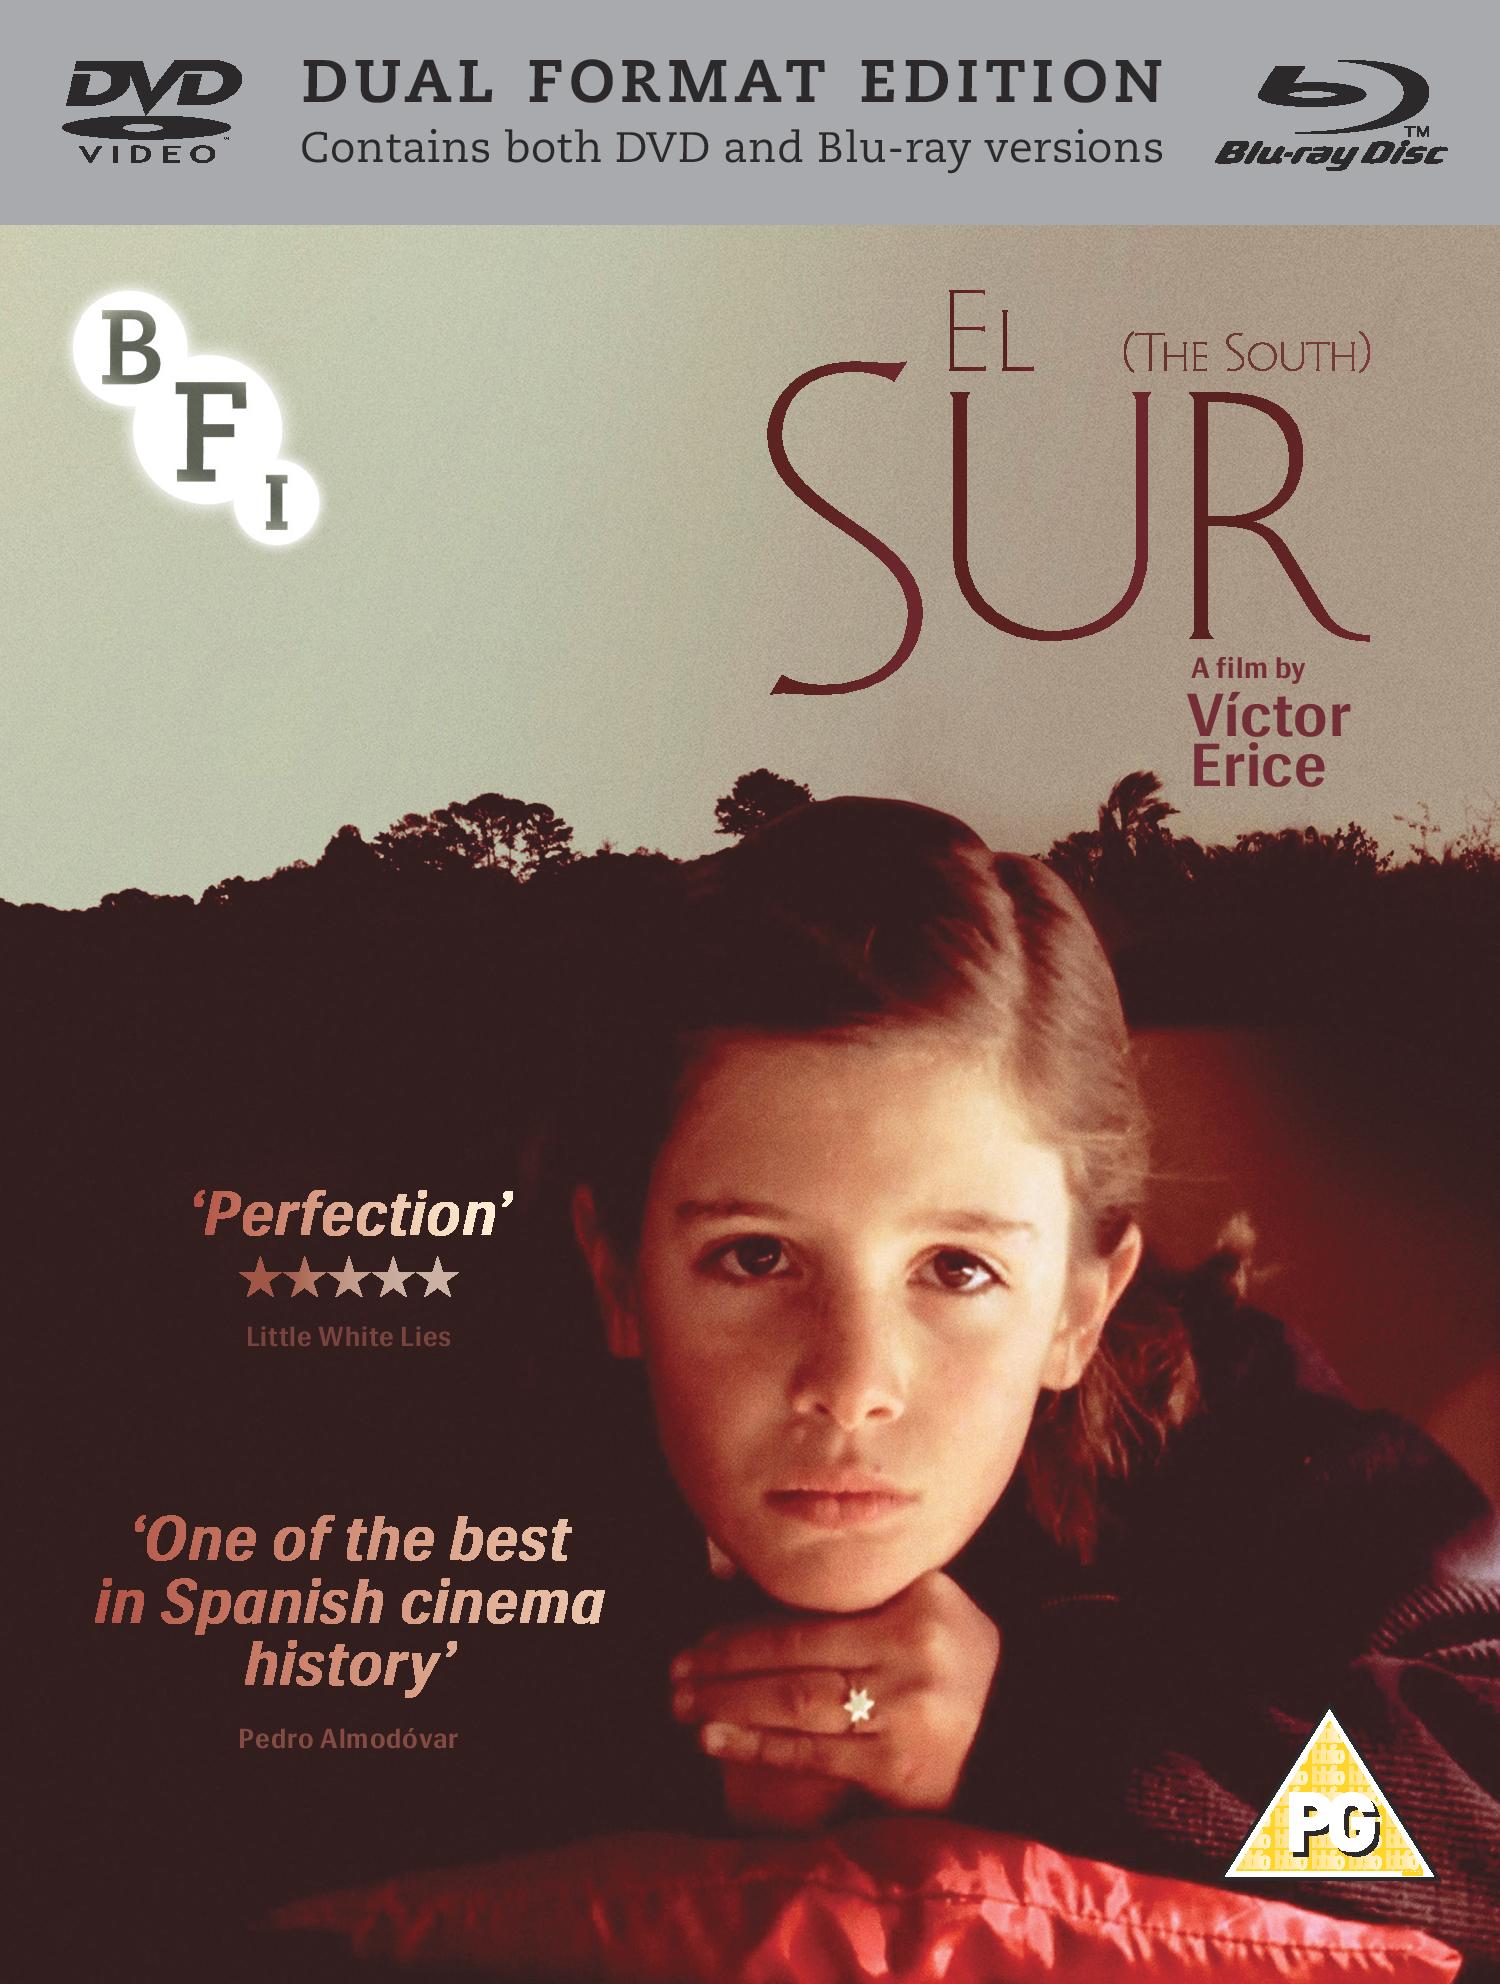 El Sur (dir. Victor Erice, 1983 )